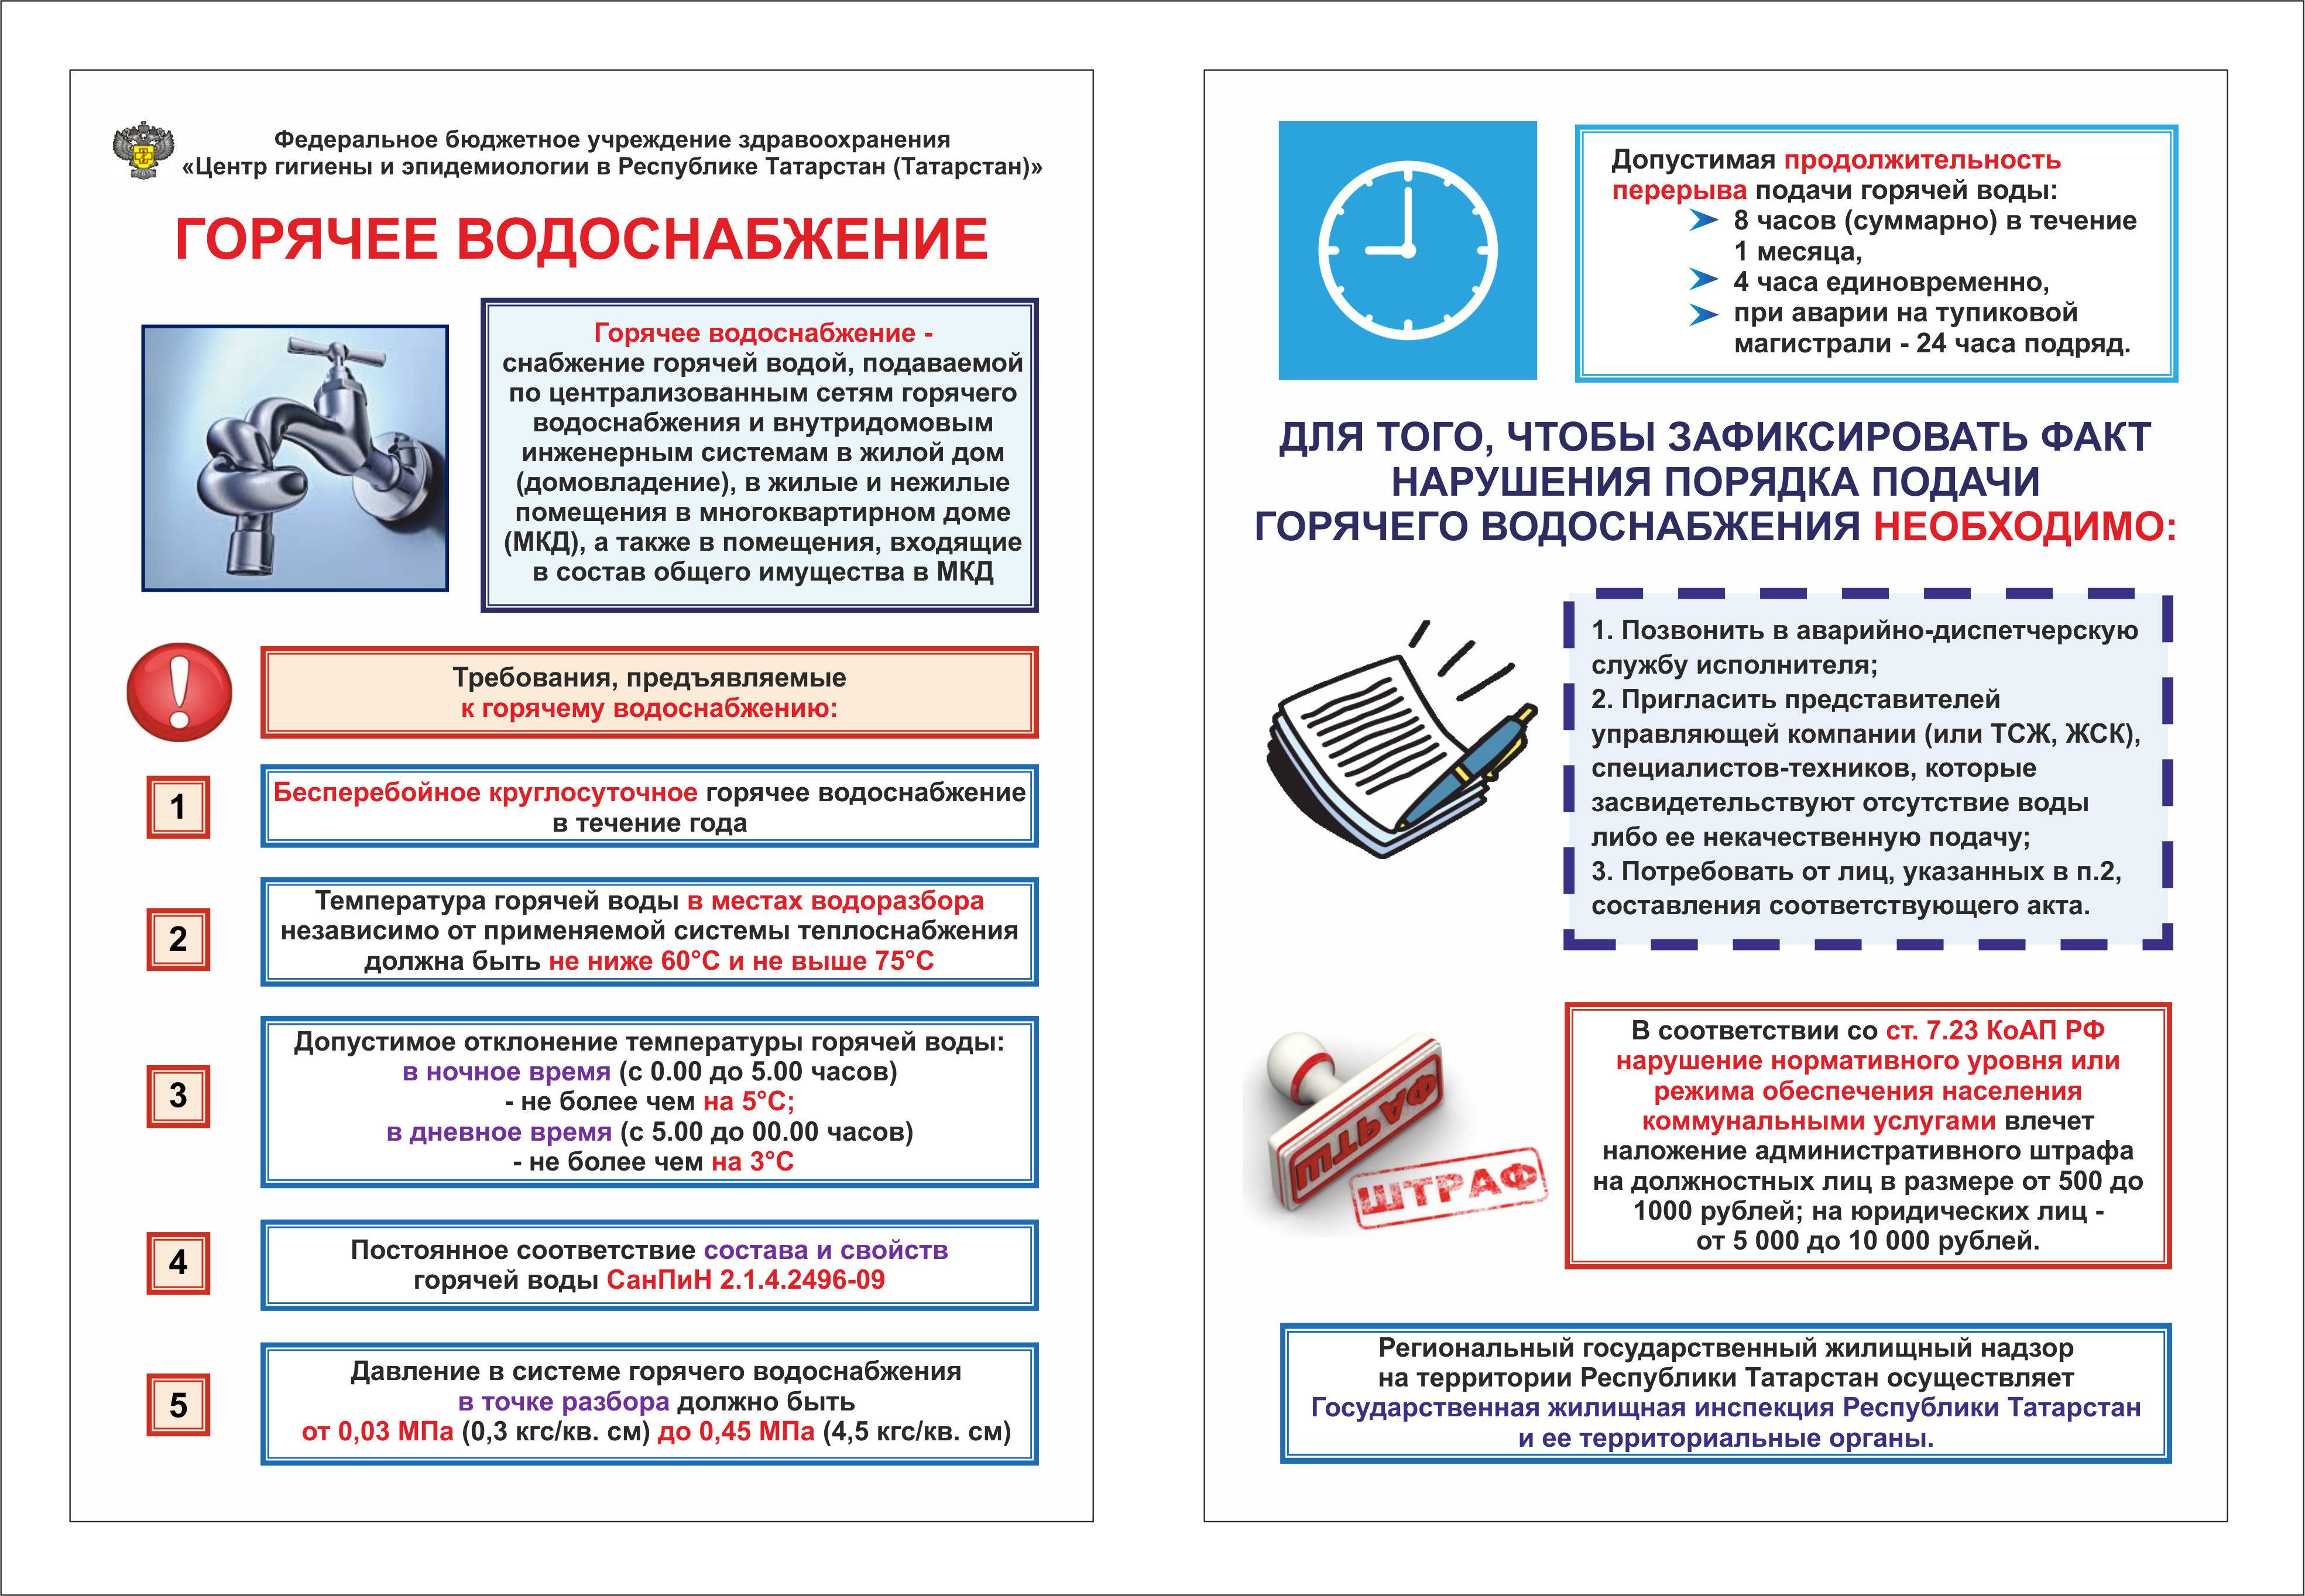 Перерасчёт горячей воды при несоответствии температурного режима. - вопрос №13997947 © 9111.ru - 2021 г.